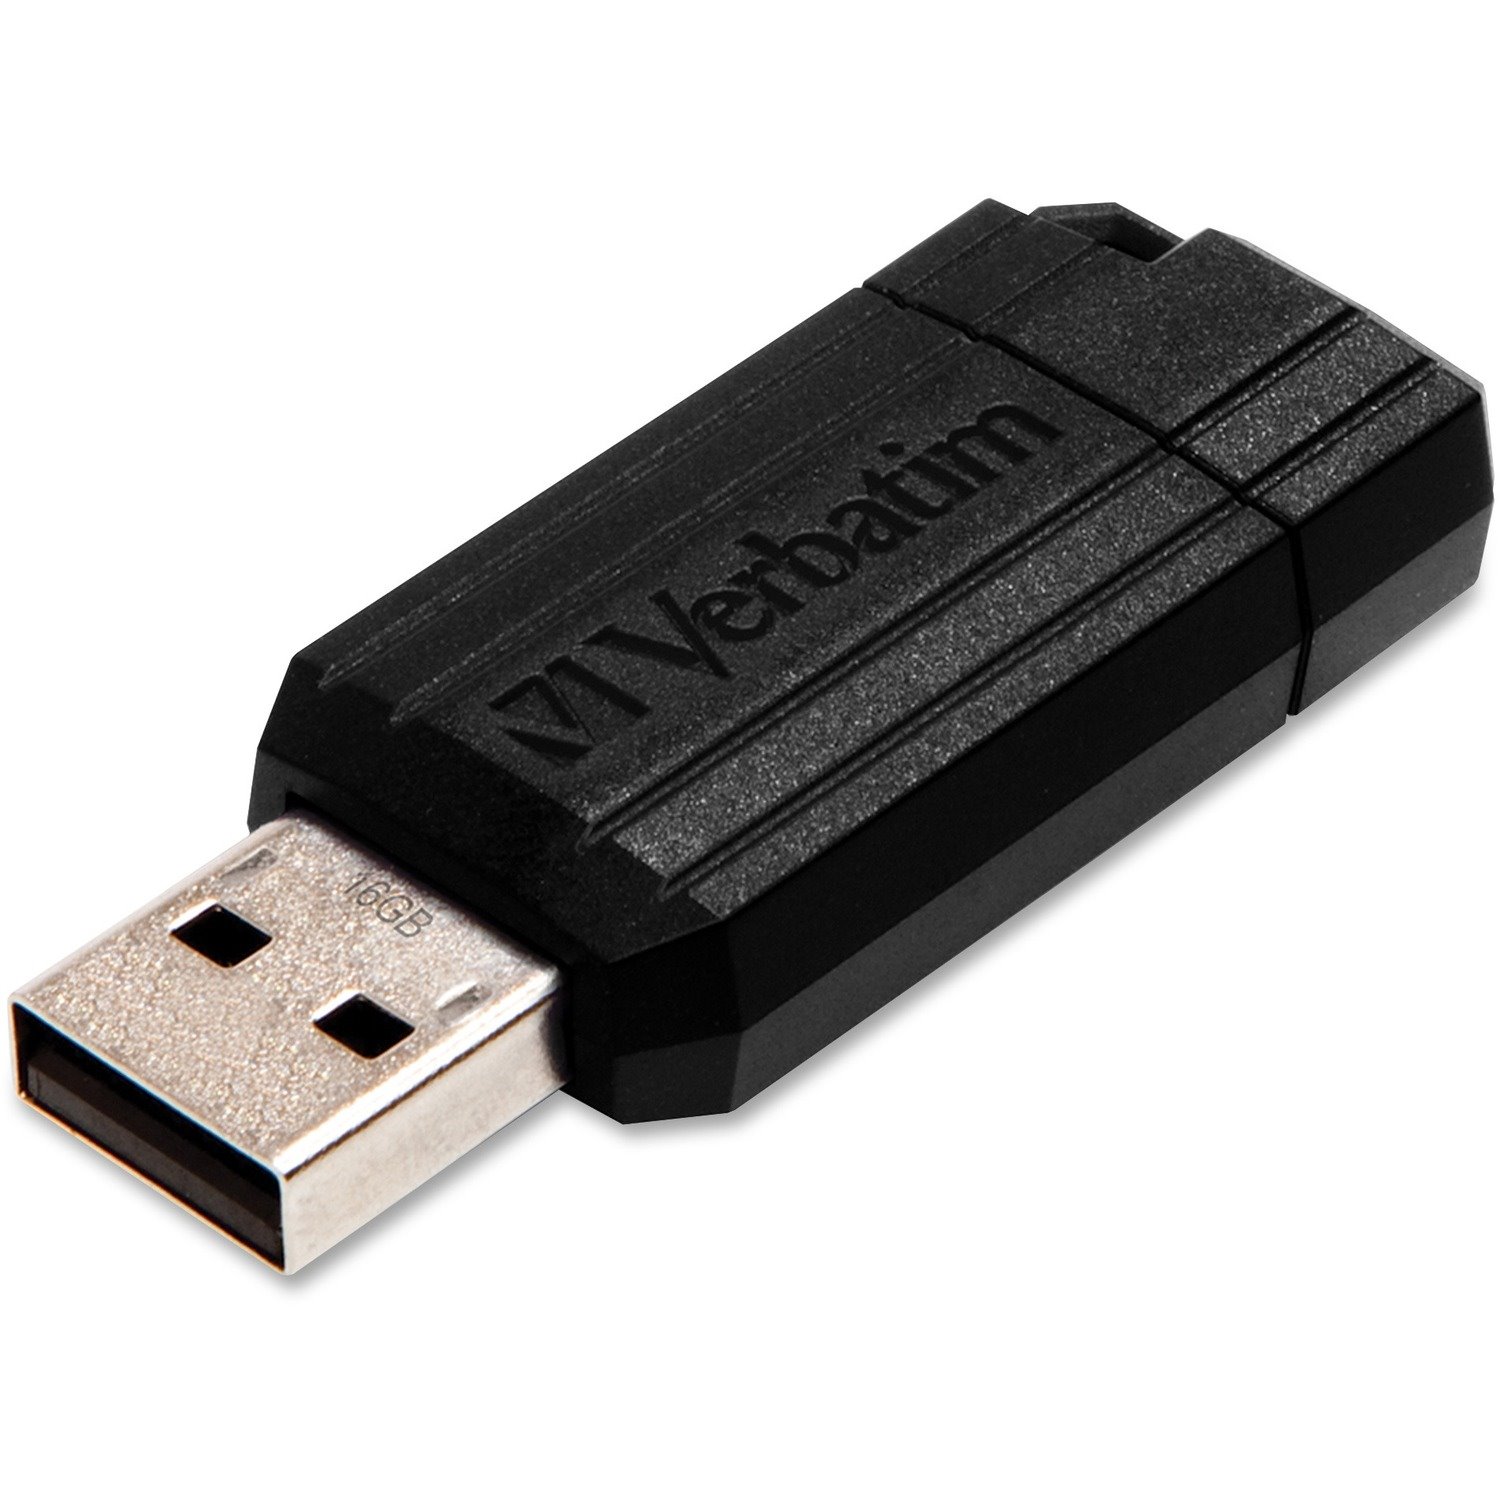 Verbatim PinStripe 16 GB USB Flash Drive - Black